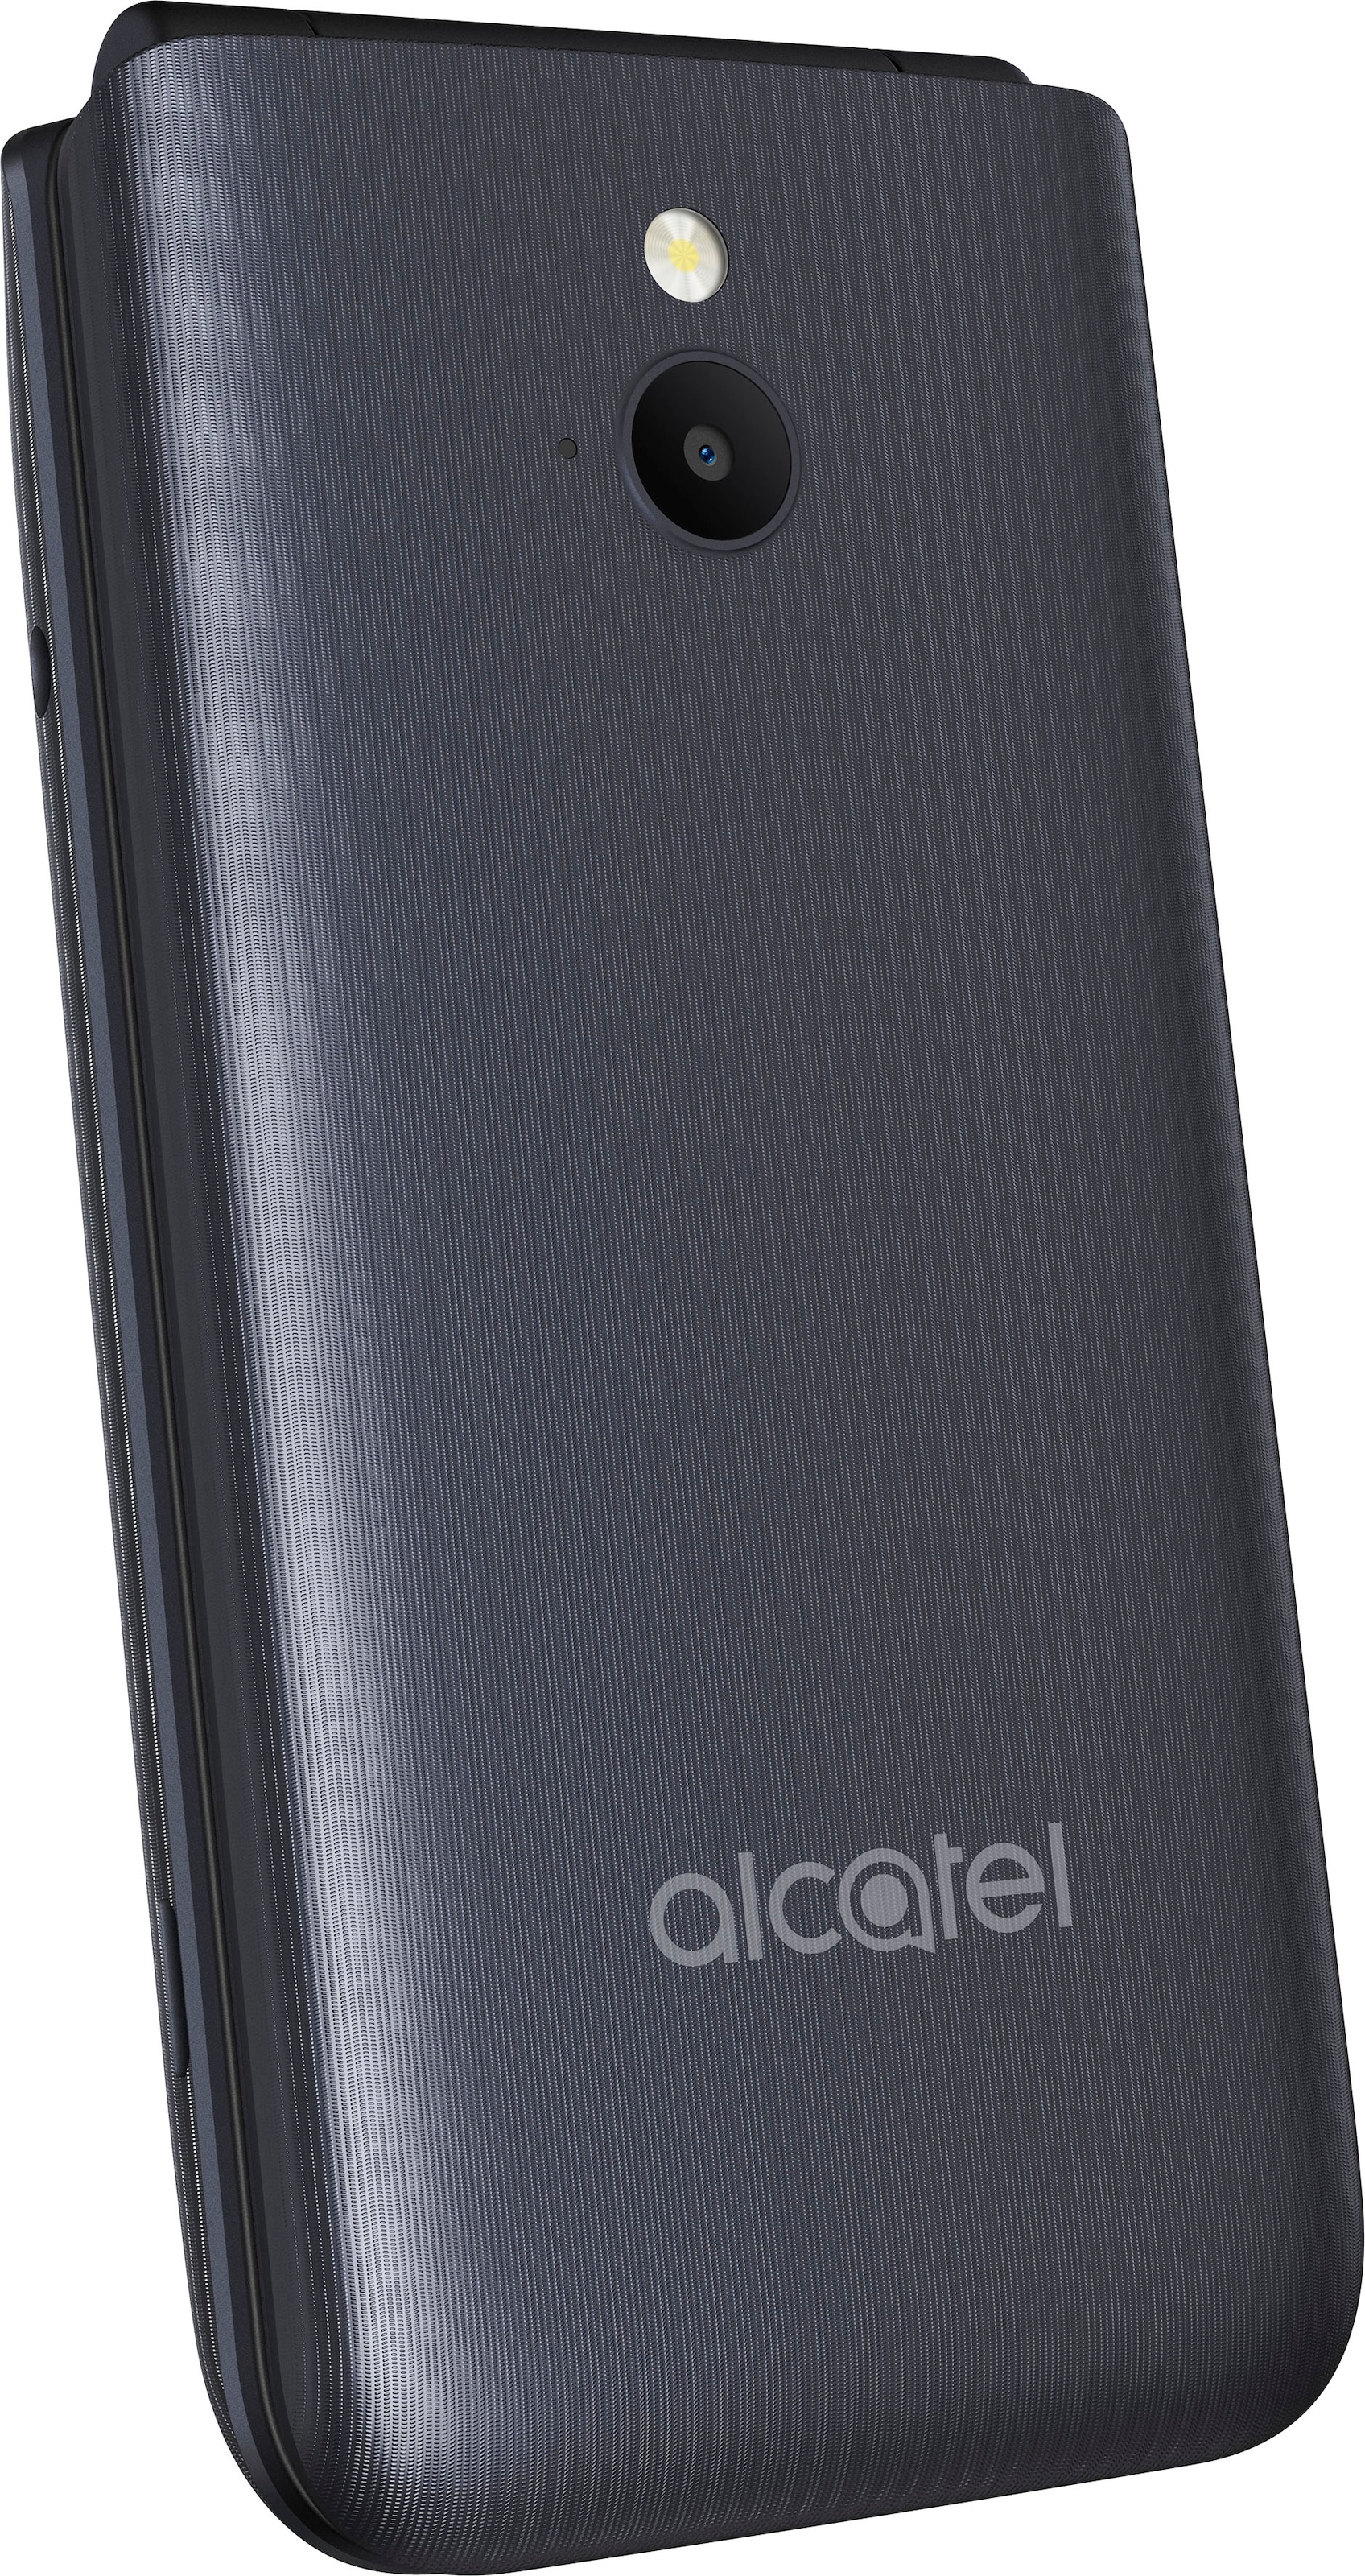 Alcatel Handy »3082«, Dark Gray, 6,1 cm/2,4 Zoll, 0,13 GB Speicherplatz, 1,3  MP Kamera jetzt im OTTO Online Shop